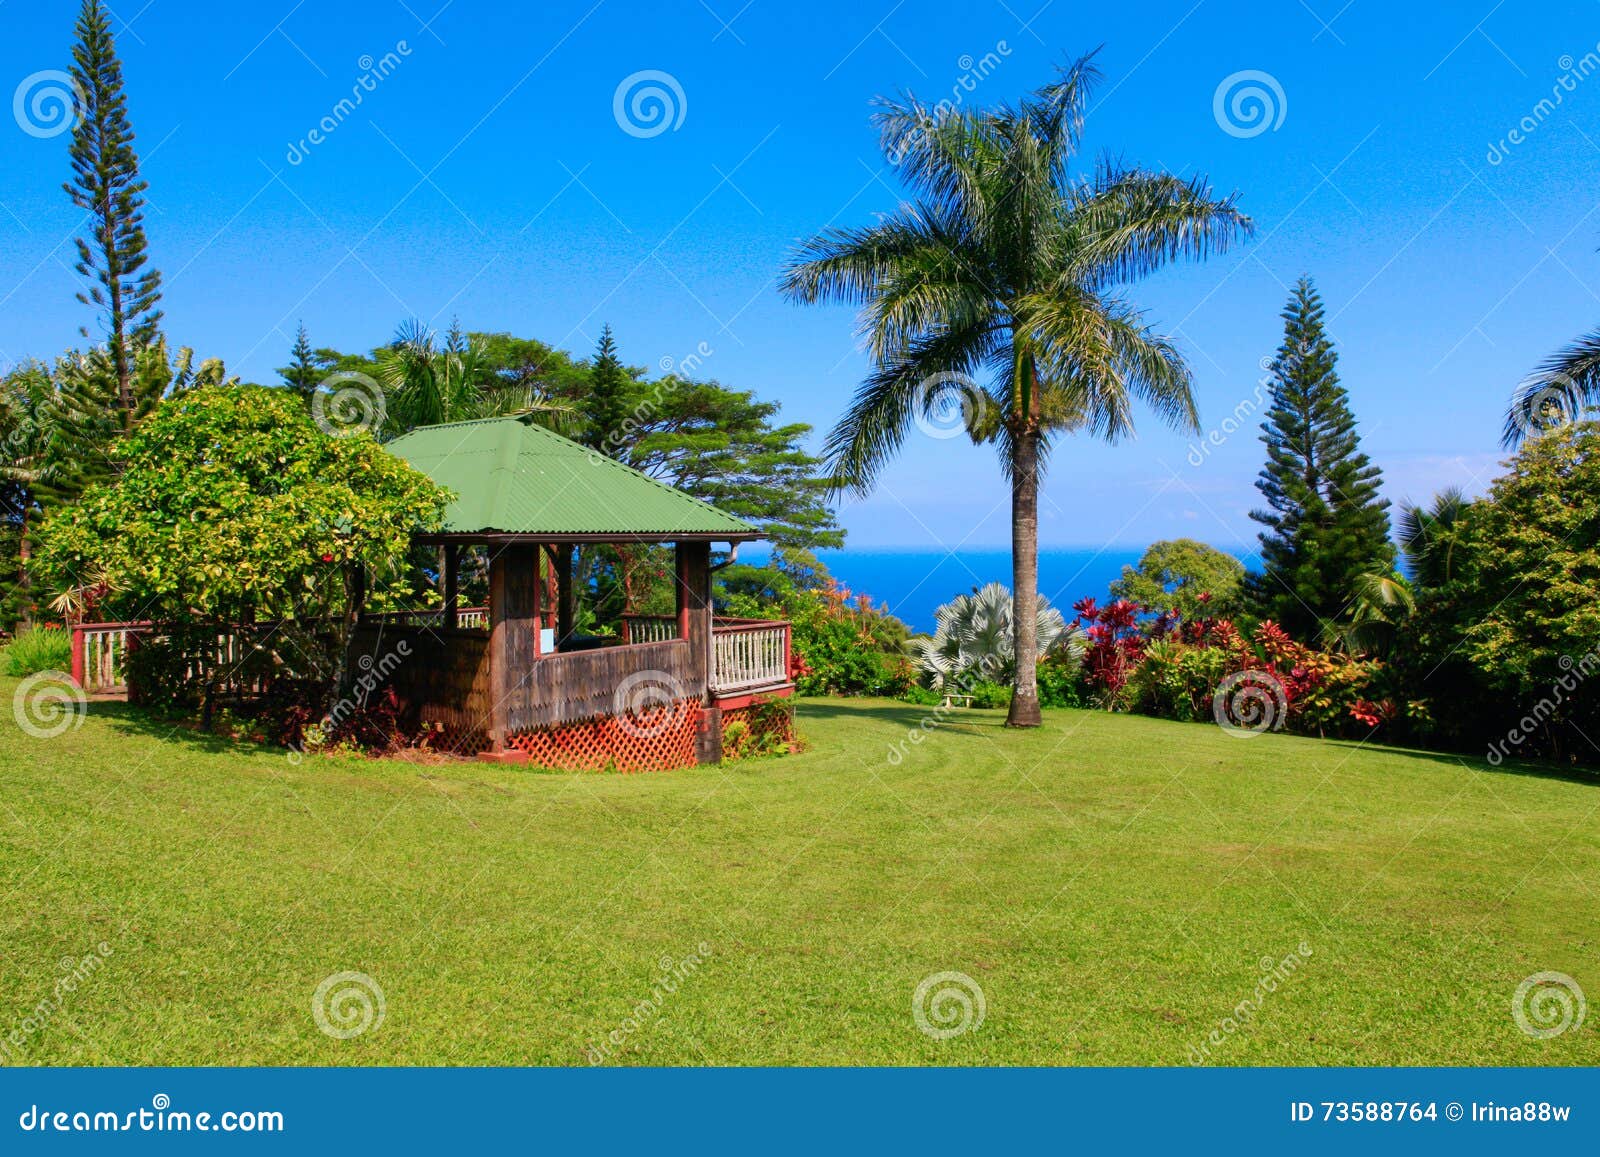 Gazebo In Tropical Garden Garden Of Eden Maui Hawaii Stock Photo